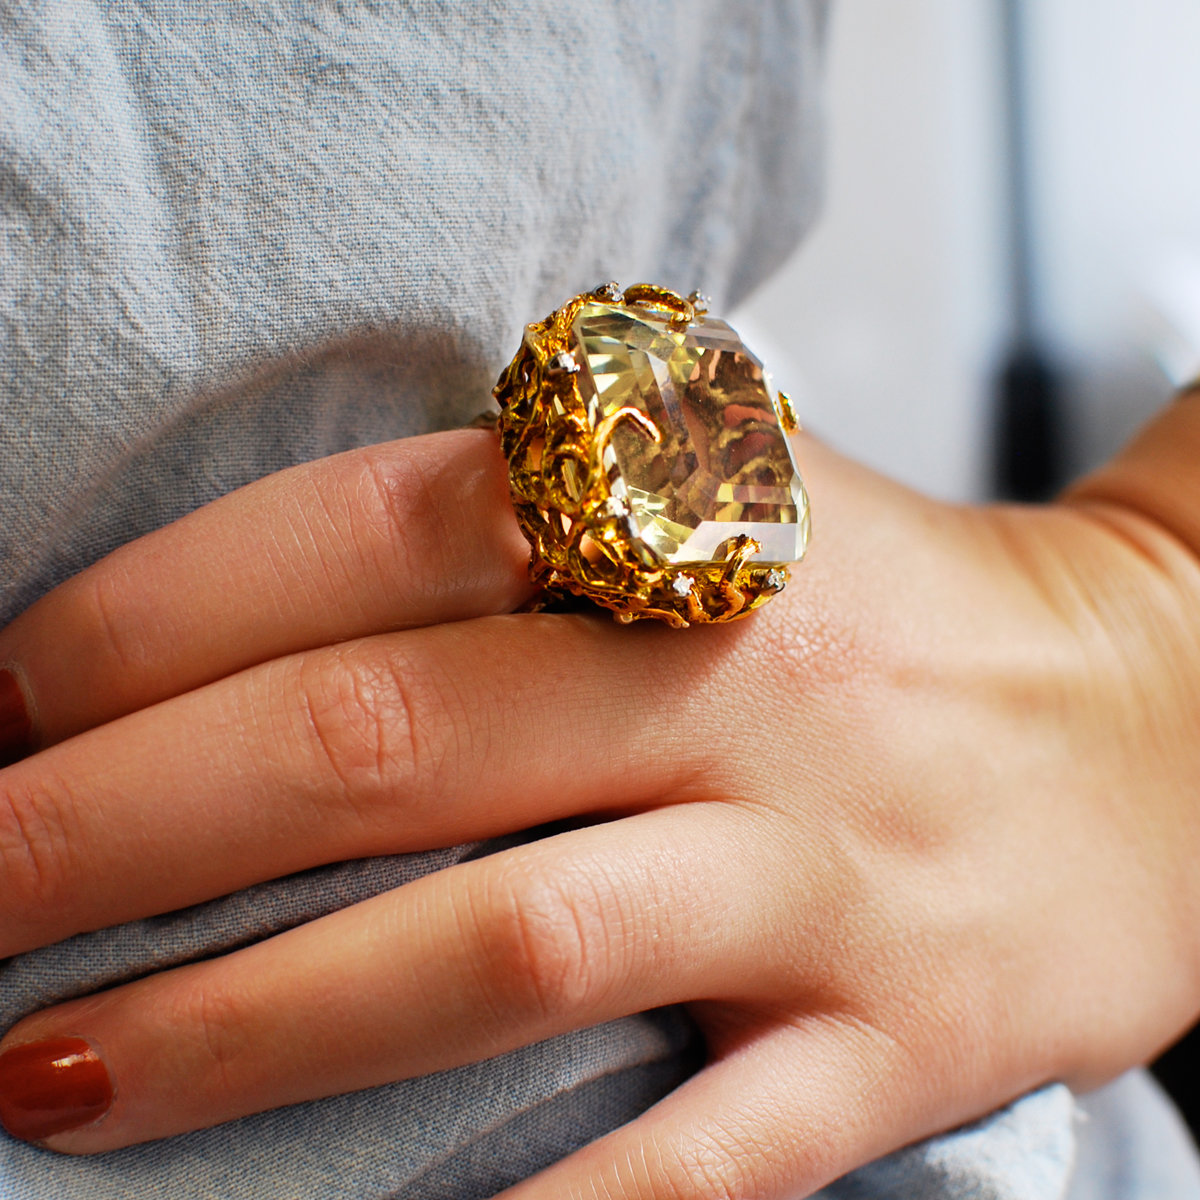 Кольцо оказалось золотым. Красивые кольца. Массивные кольца. Крупные кольца. Перстень с крупным камнем.